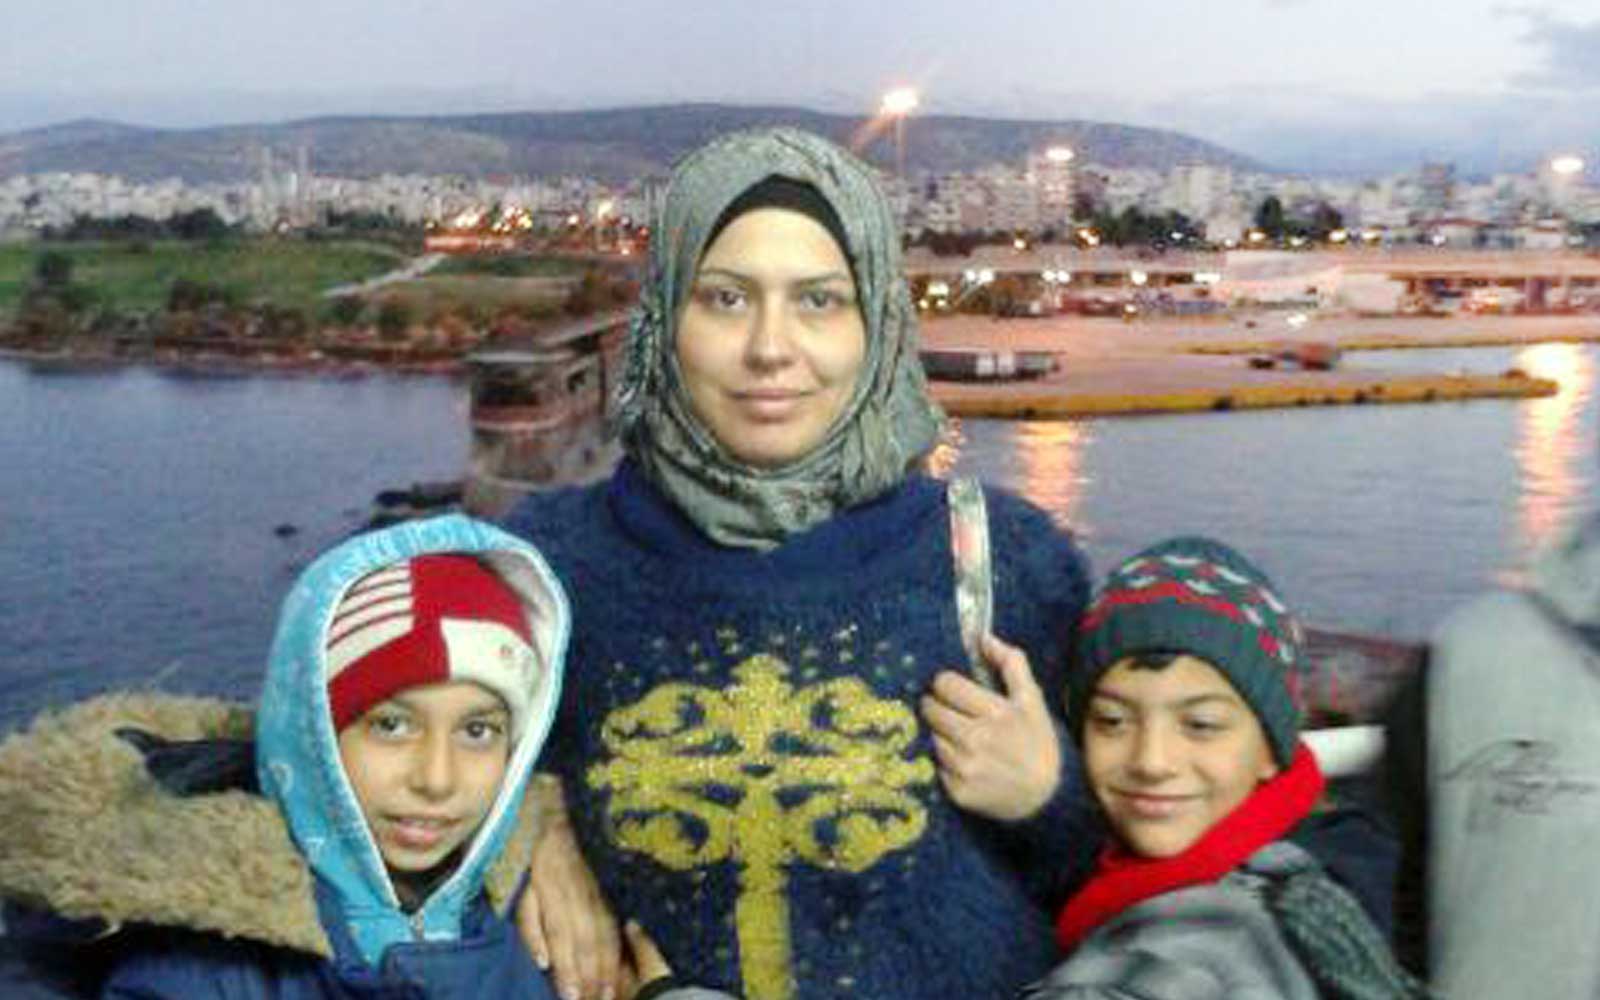 Maisaa Naoulos Erinnerung an die Flucht über das Mittelmeer